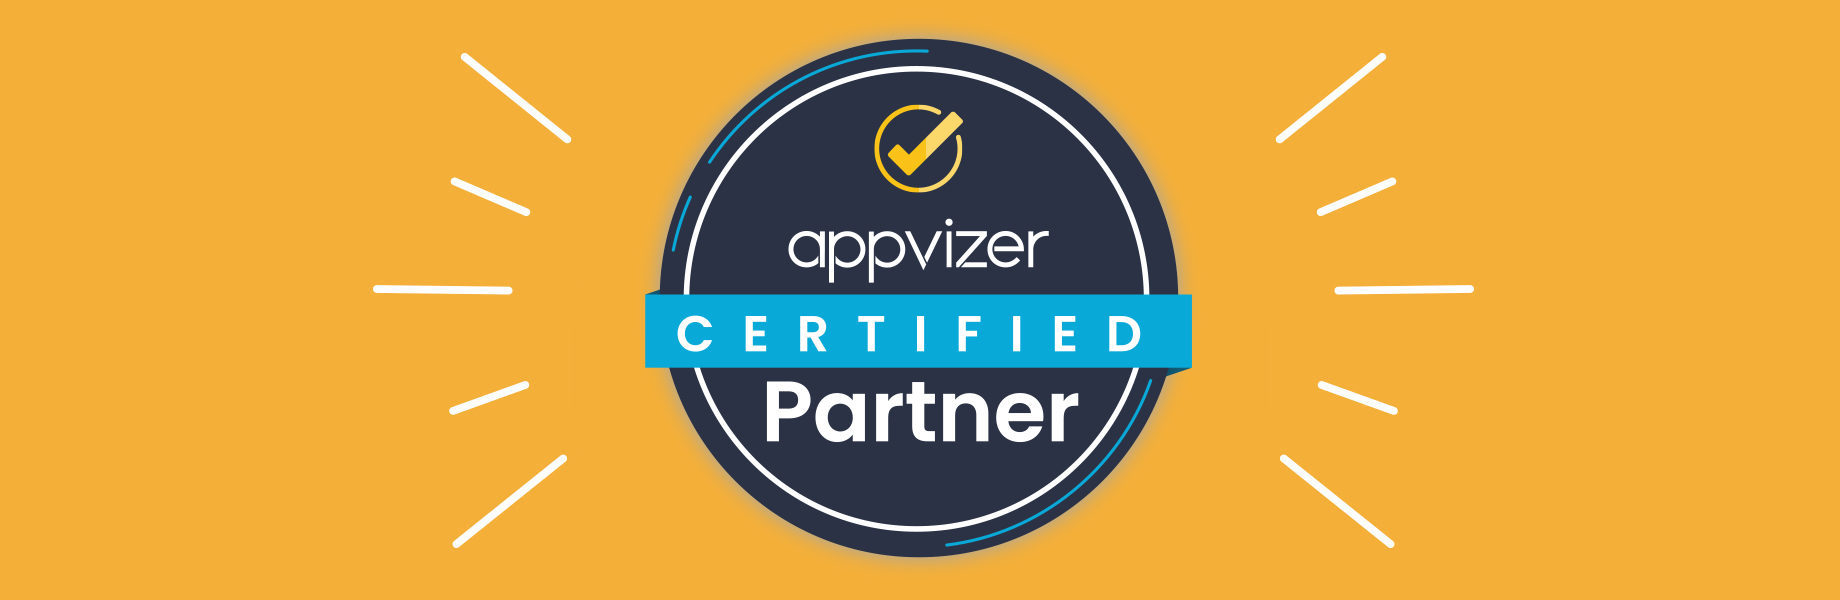 ¿Por qué un badge Certified Partner appvizer es atribuido a un software?